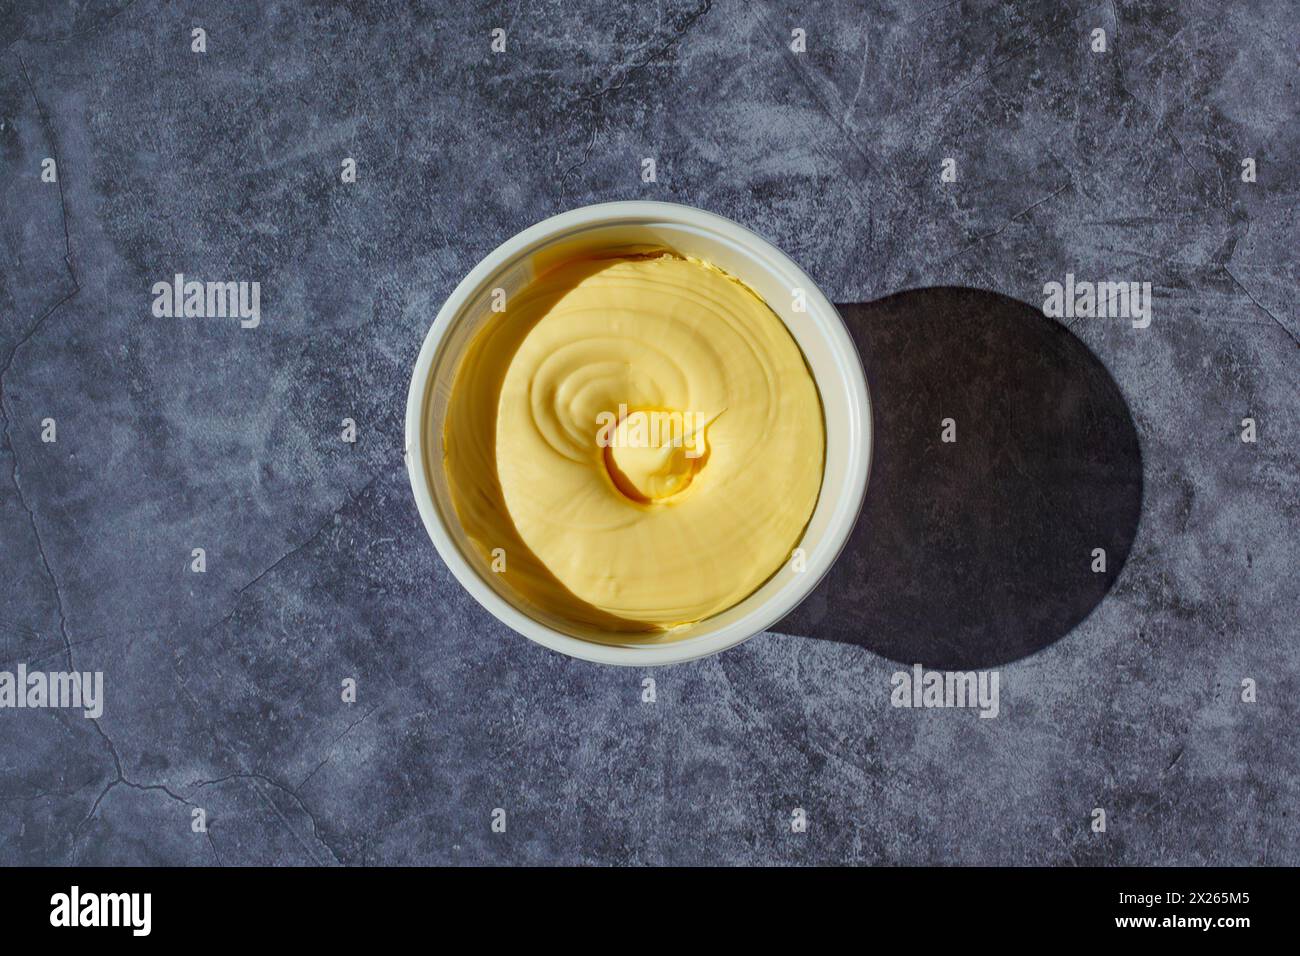 Vue aérienne d'un bac de margarine Banque D'Images